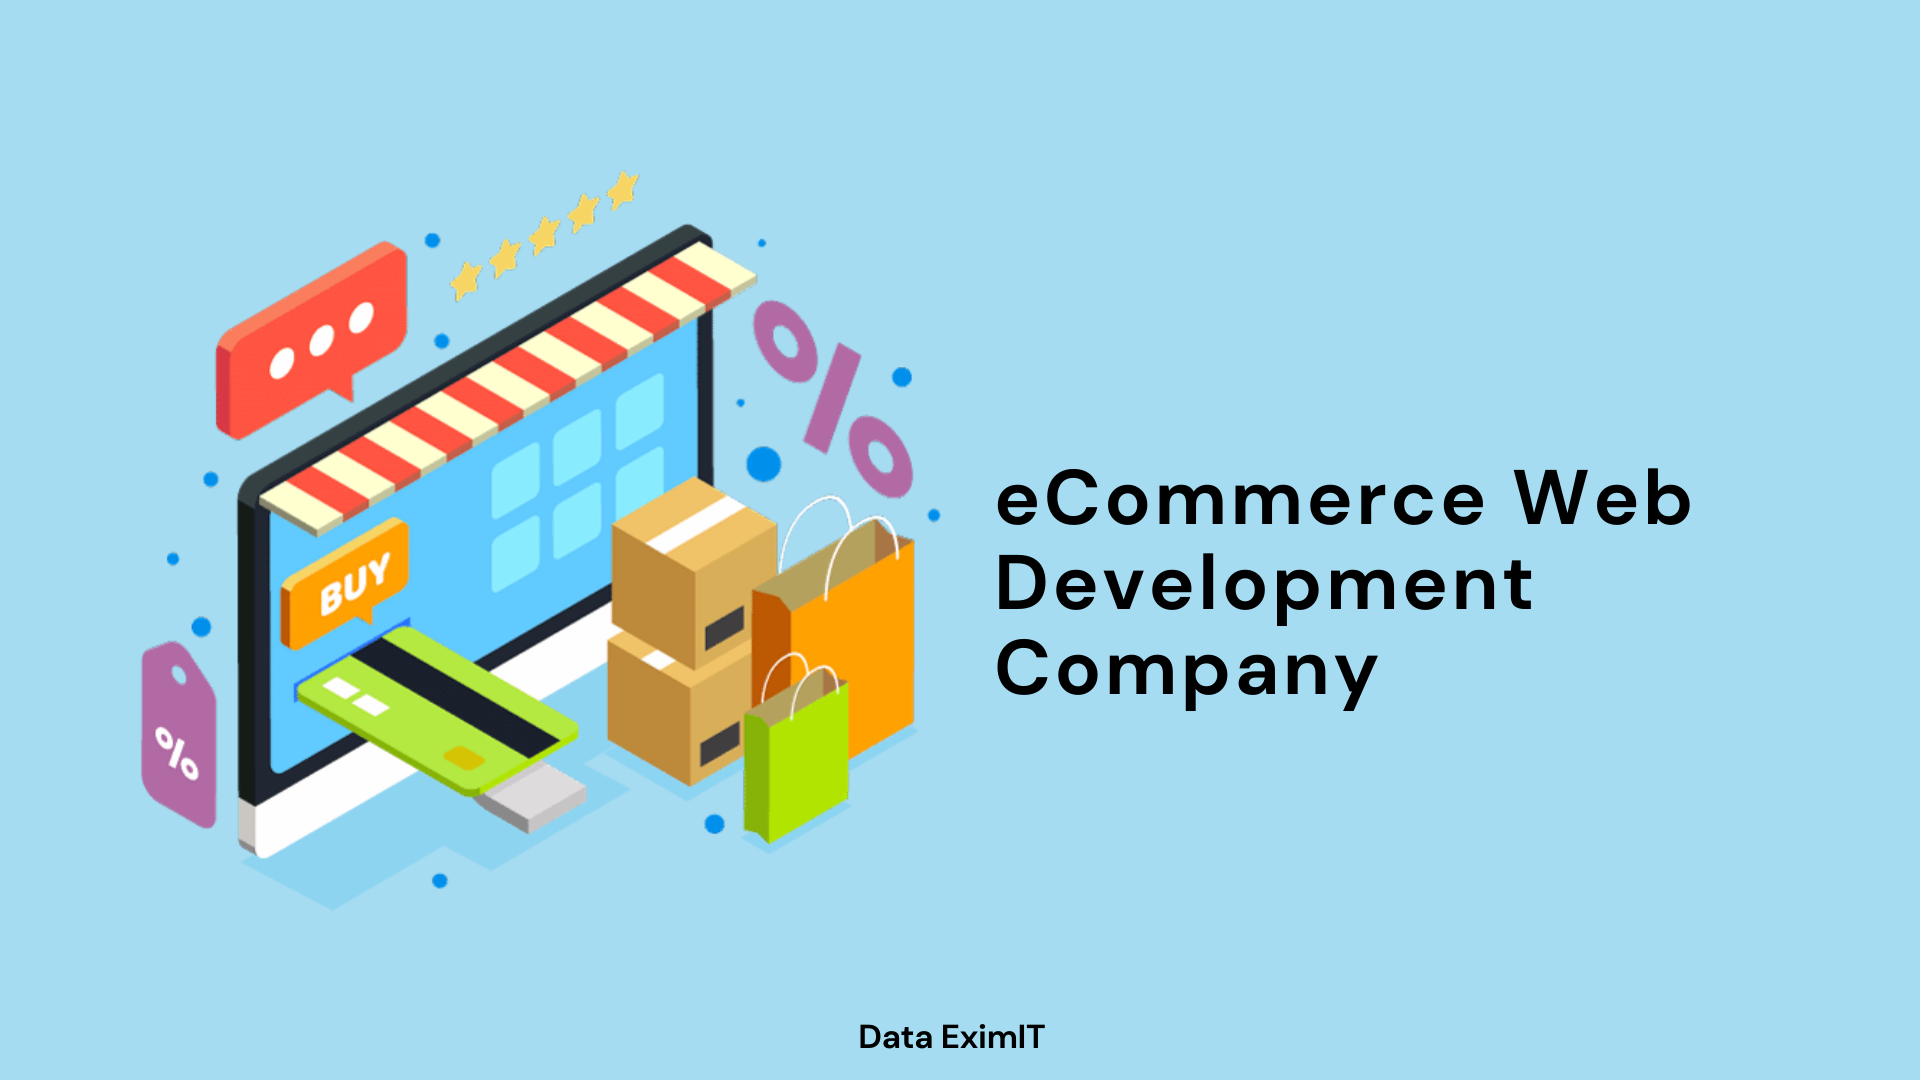 eCommerce Web Development Company